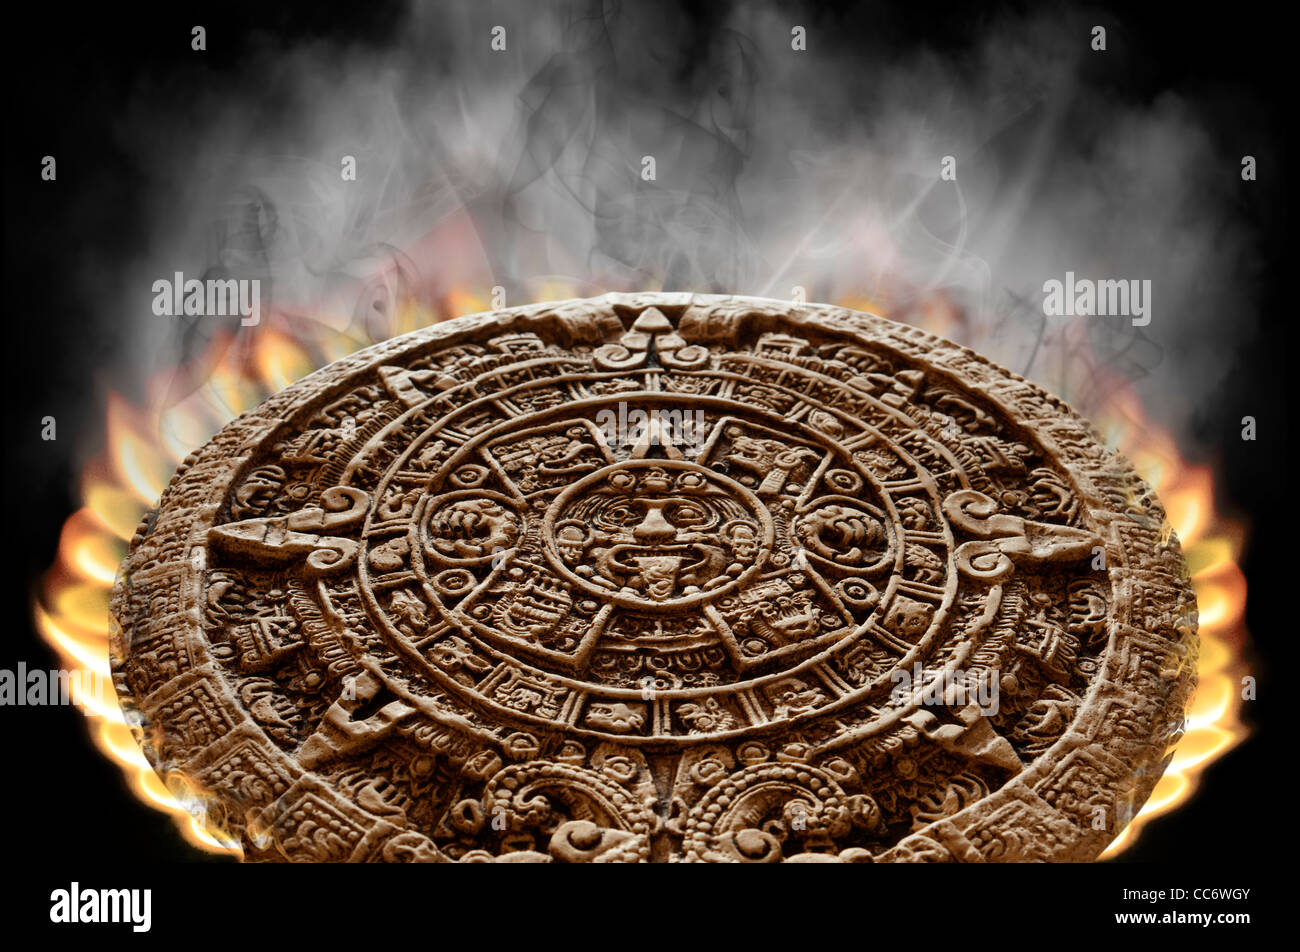 Calendrier maya apocalyptique sur le feu avec la fumée s'élevant de sa surface sur un fond noir Banque D'Images